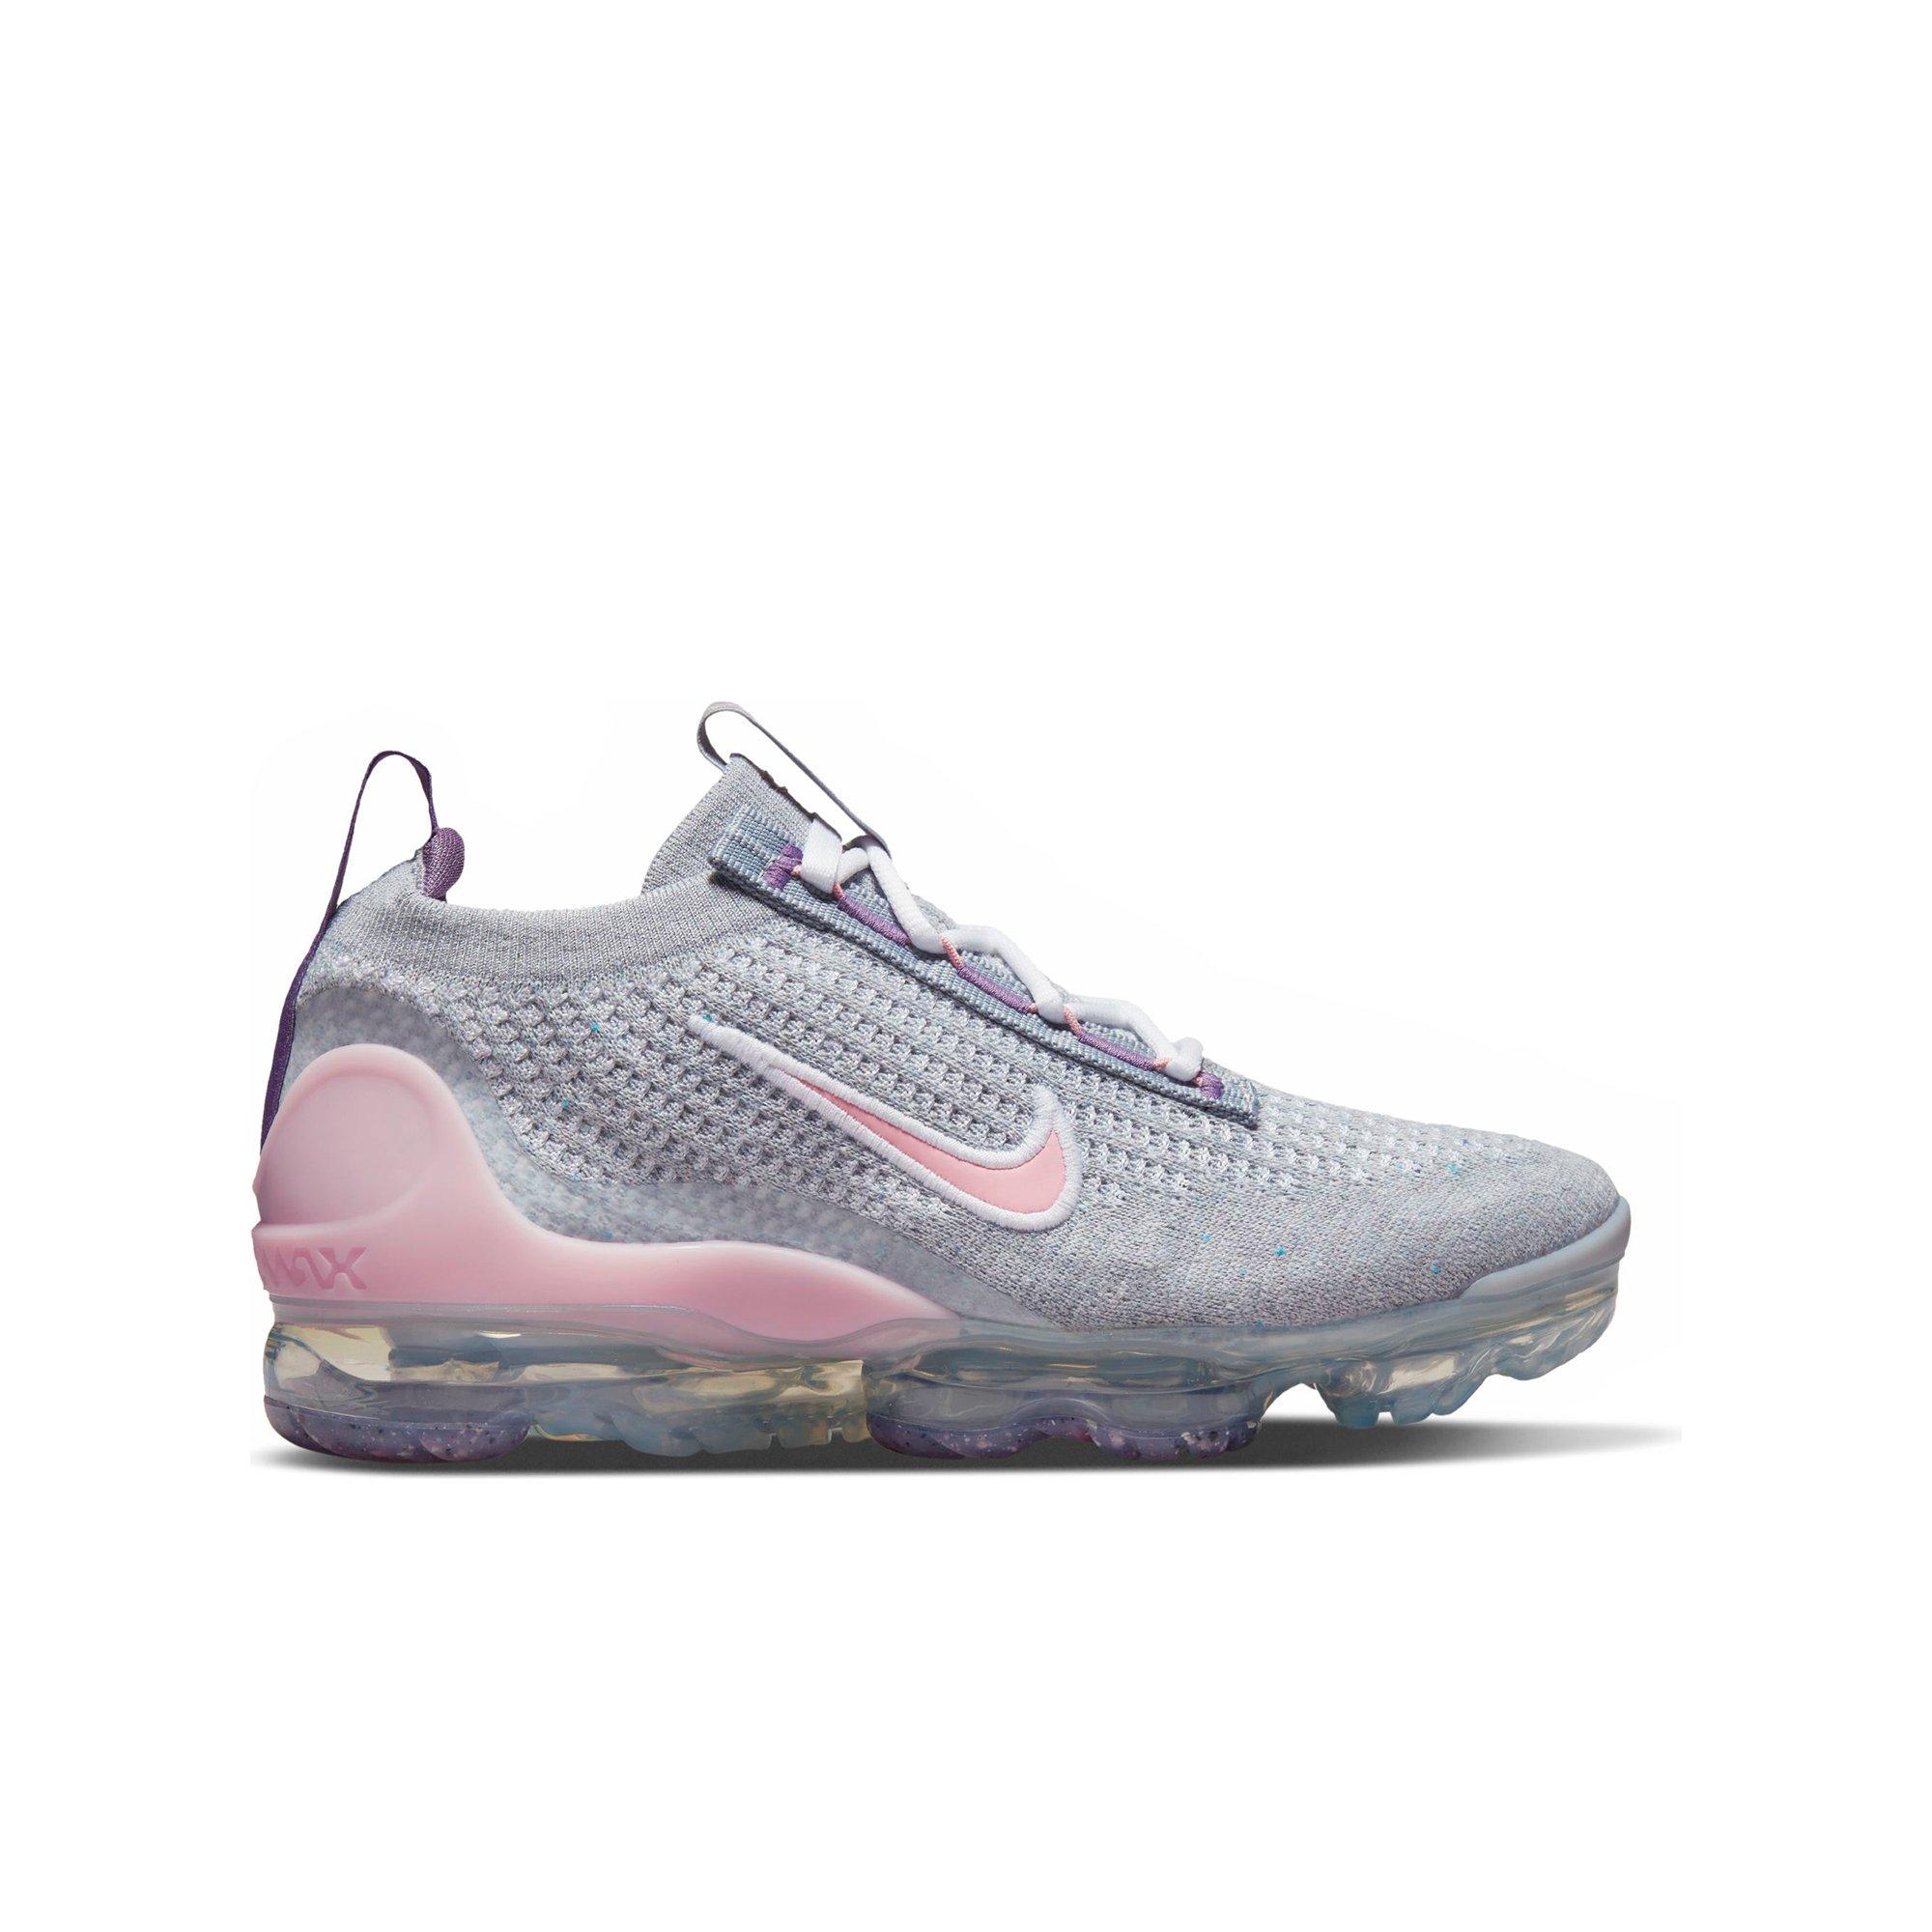 pink vapormax sneakers